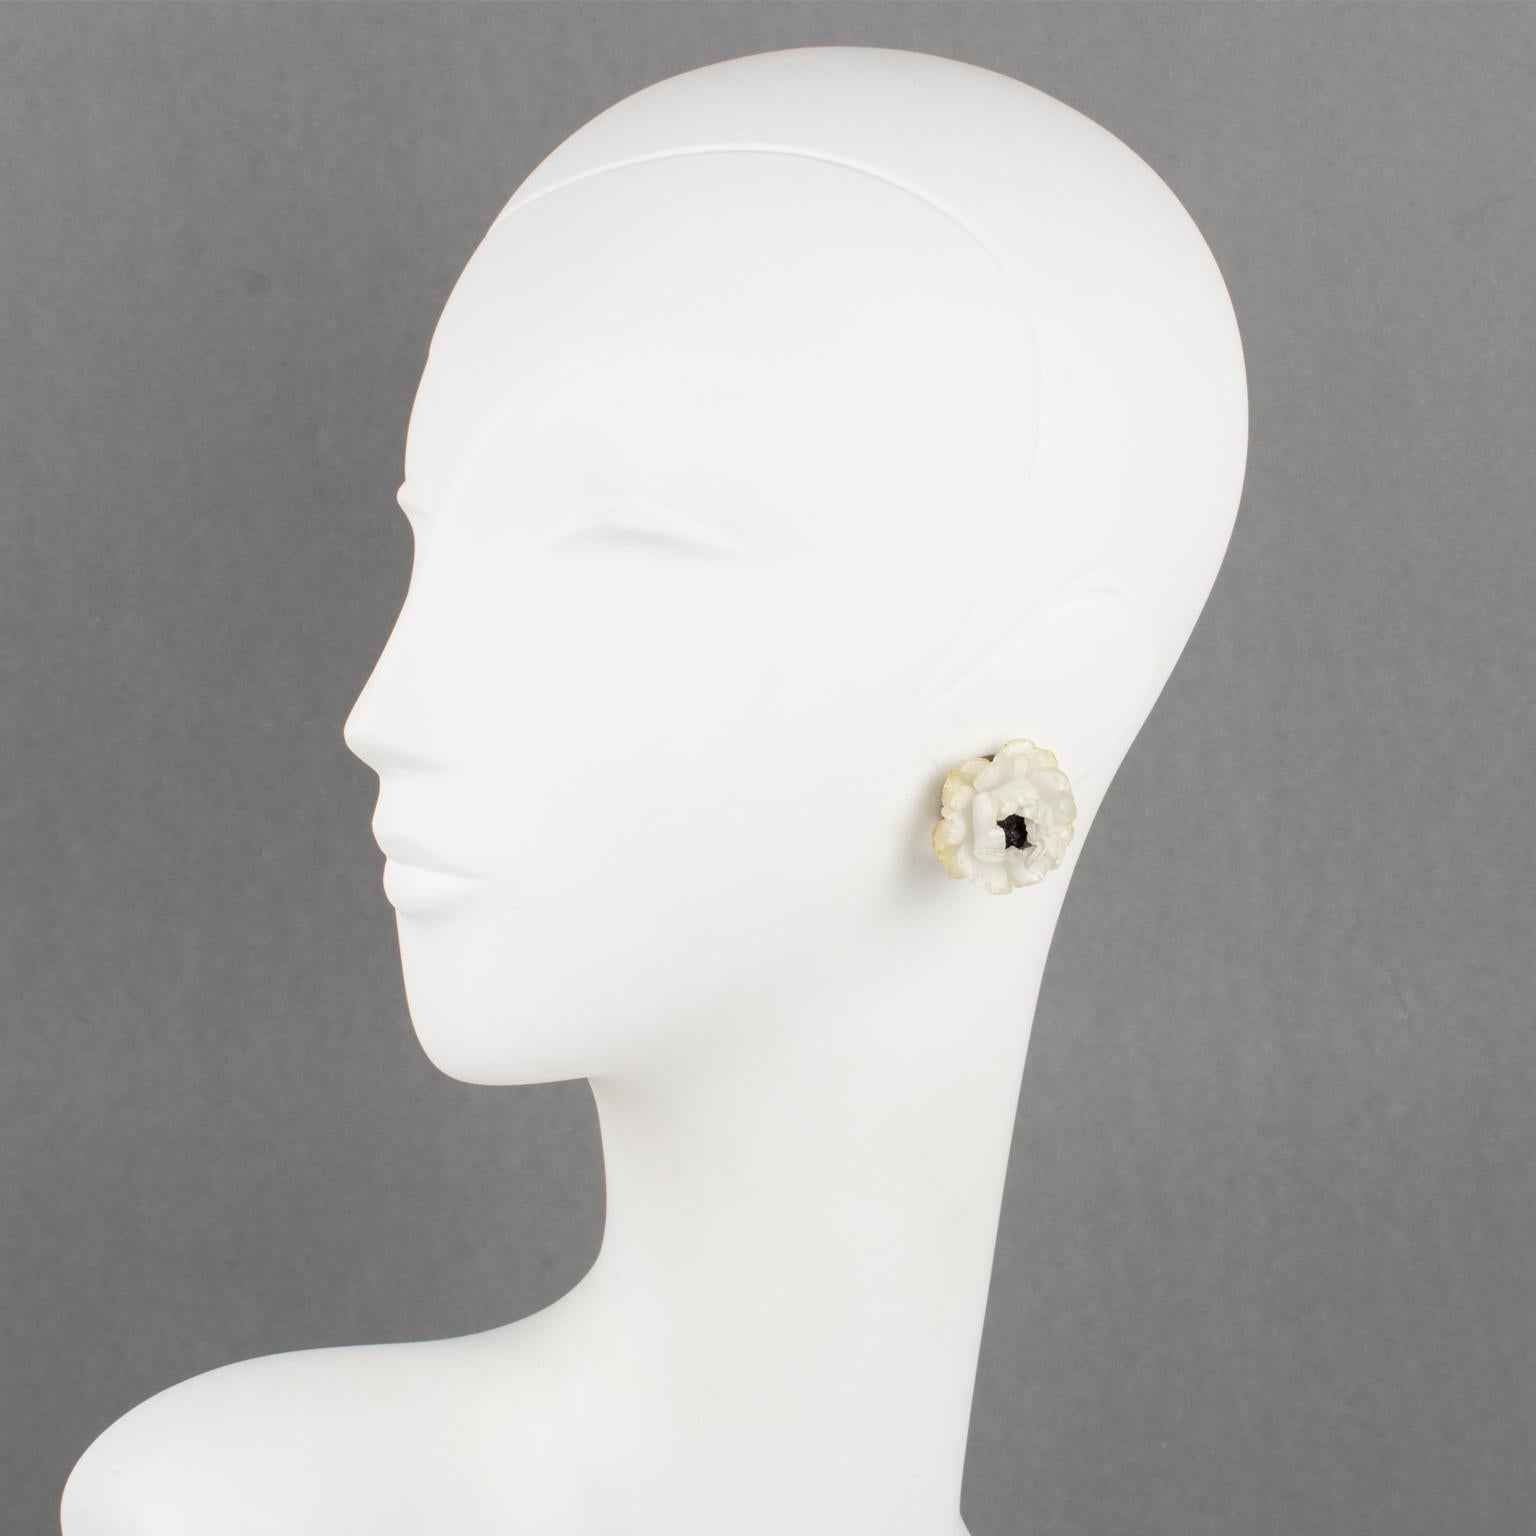 Diese hübschen, von Cilea Paris entworfenen Ohrringe zum Anstecken zeigen eine von Blumen inspirierte, handgefertigte Harzkomposition in Form einer Rosenblüte mit einem strukturierten Herz. Eine klassische cremefarbene Farbe mit hellgelben Rändern